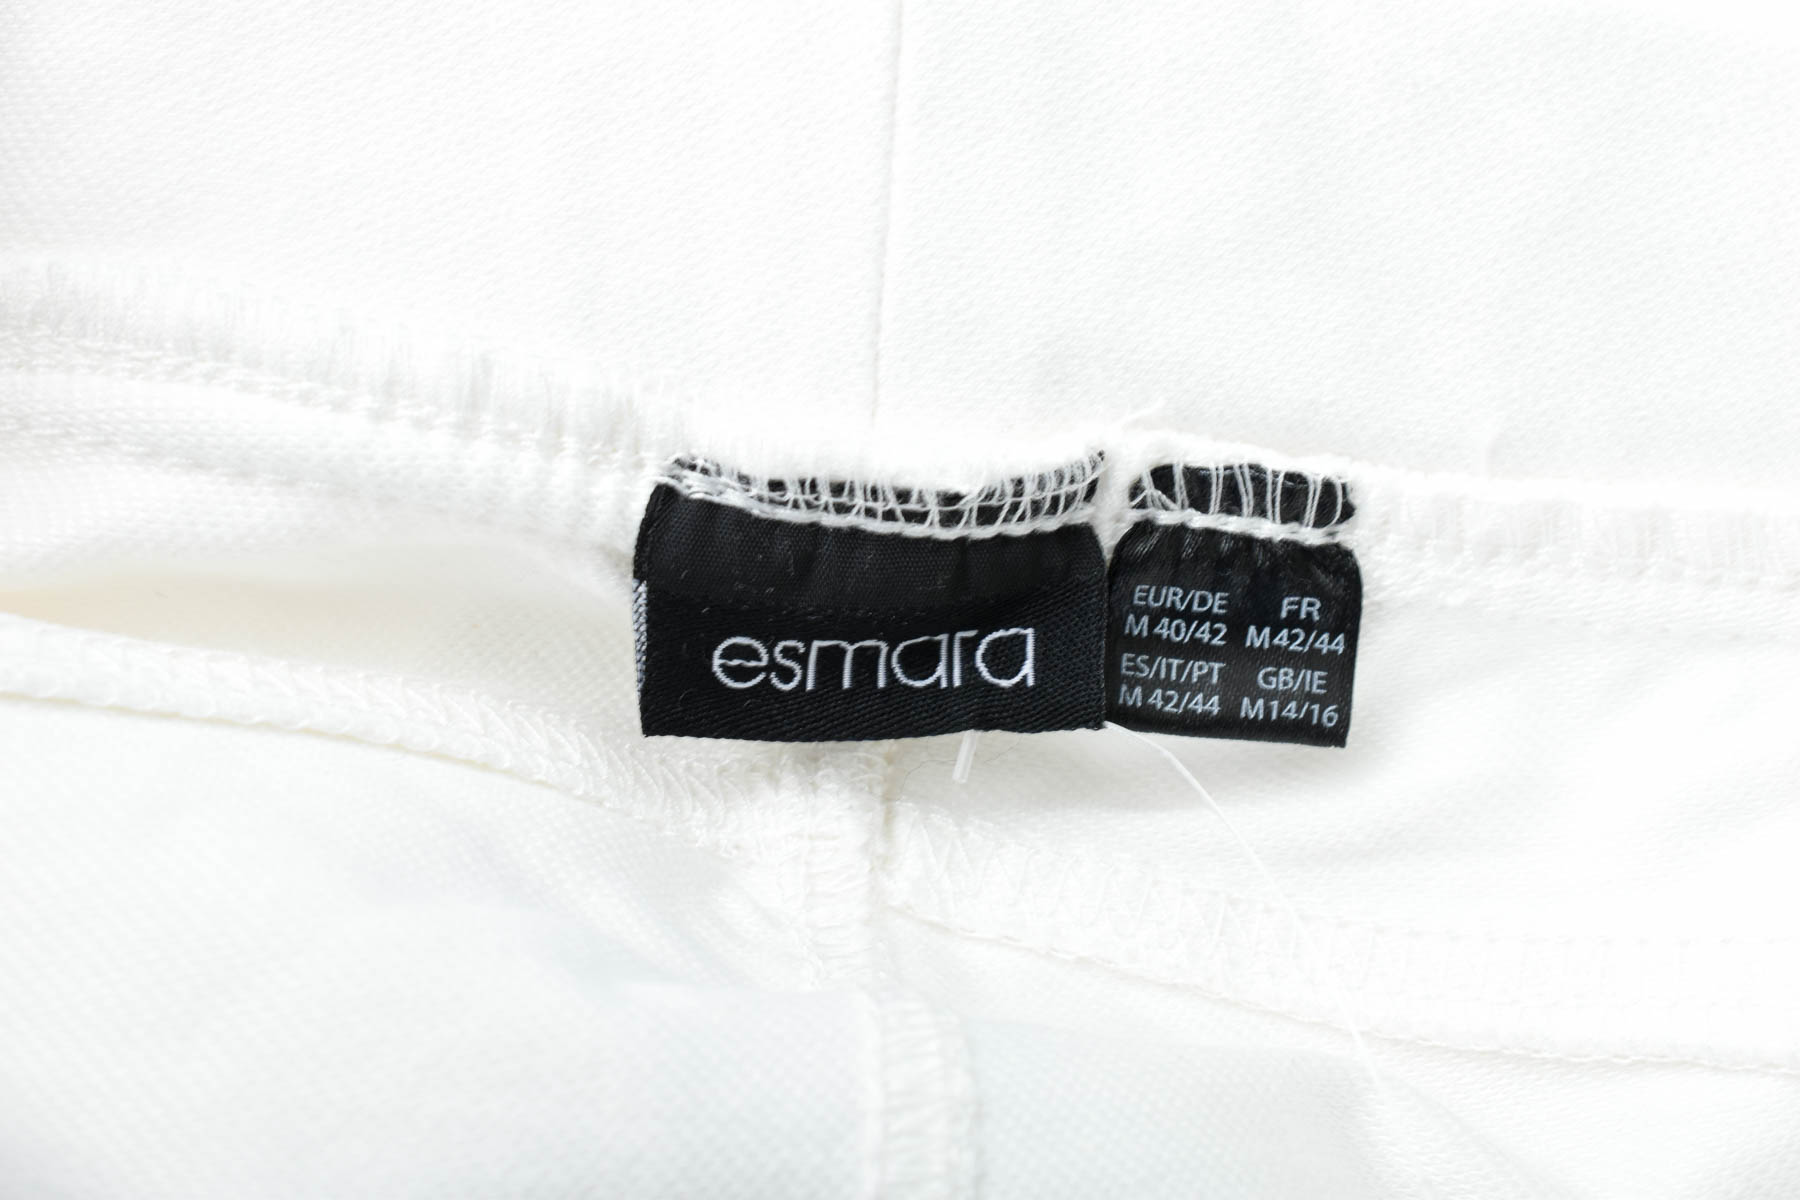 Women's trousers - Esmara - 2